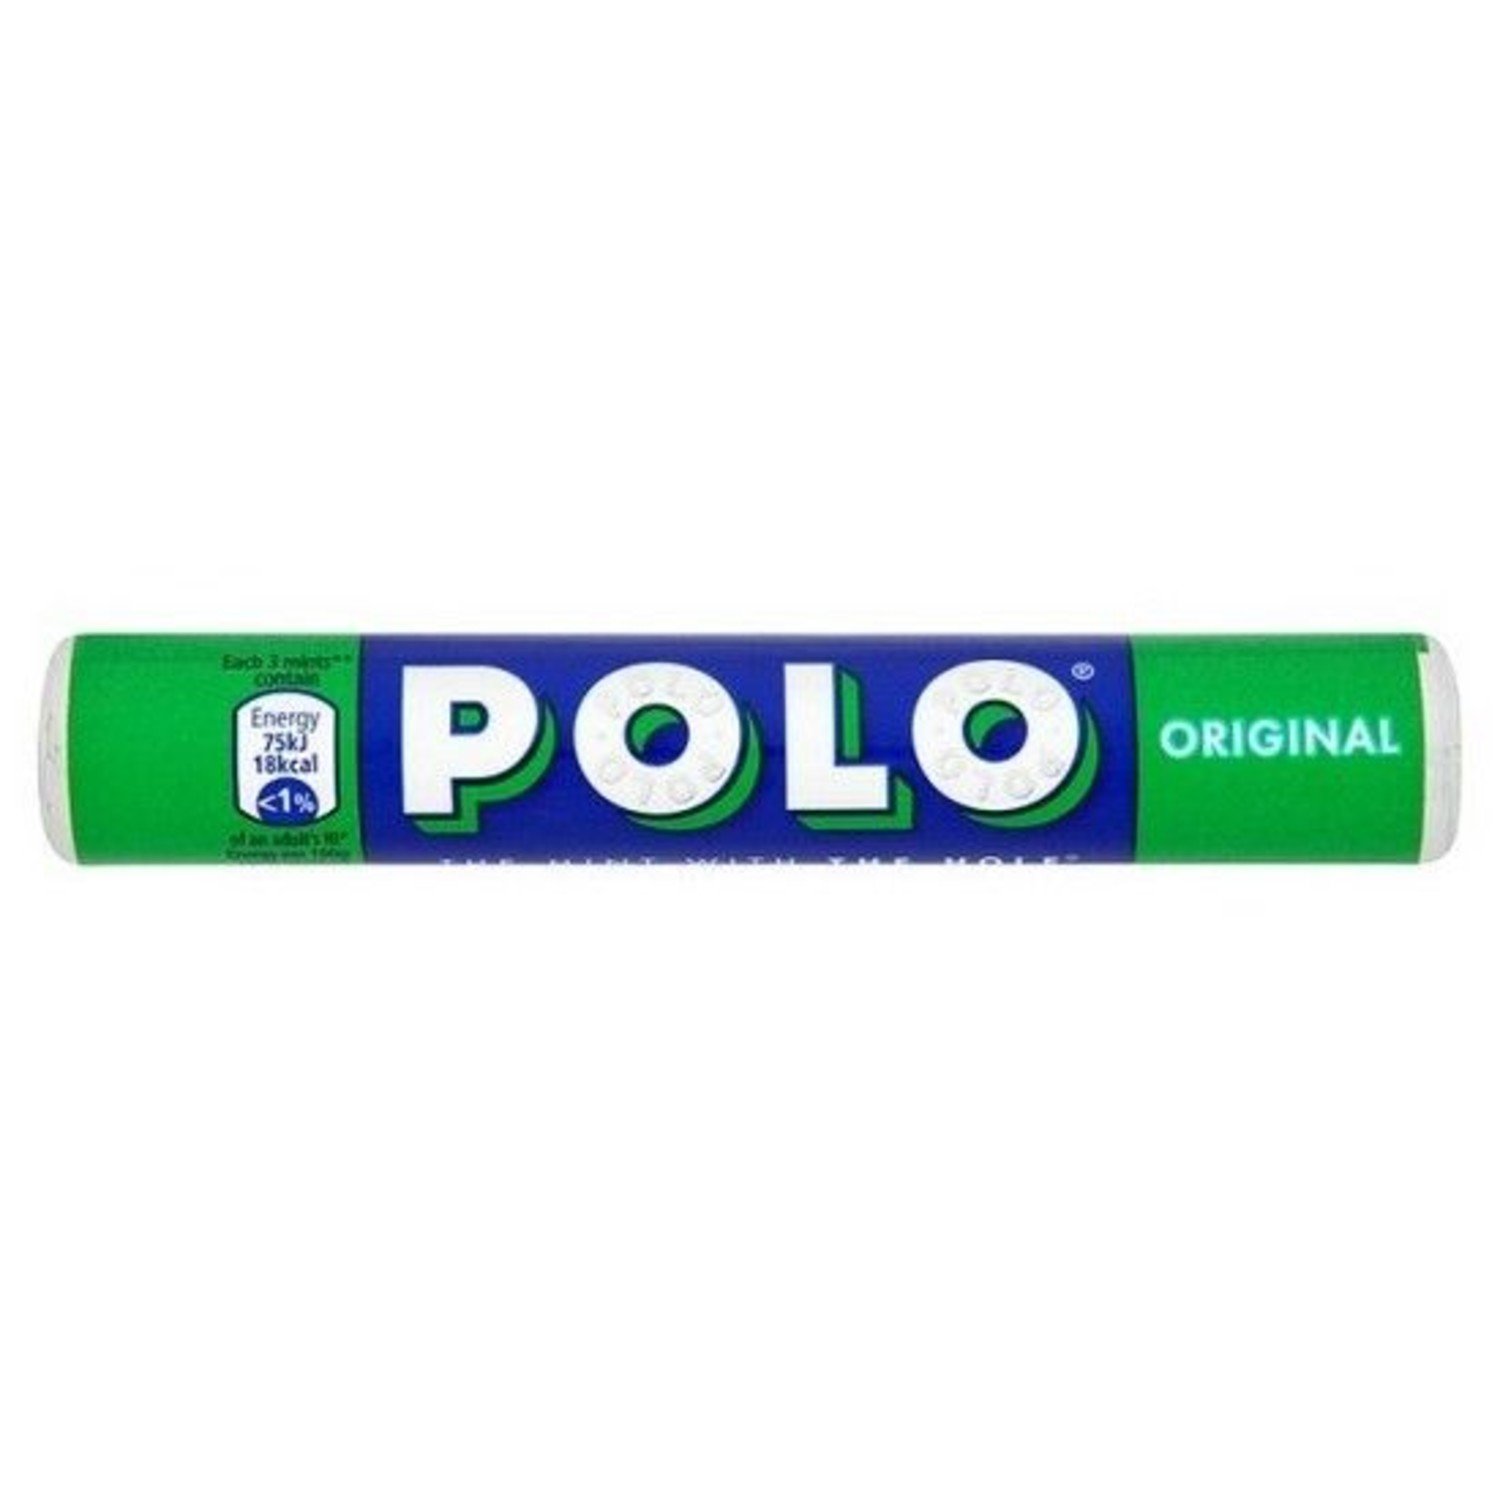 Polo Original – Chocola